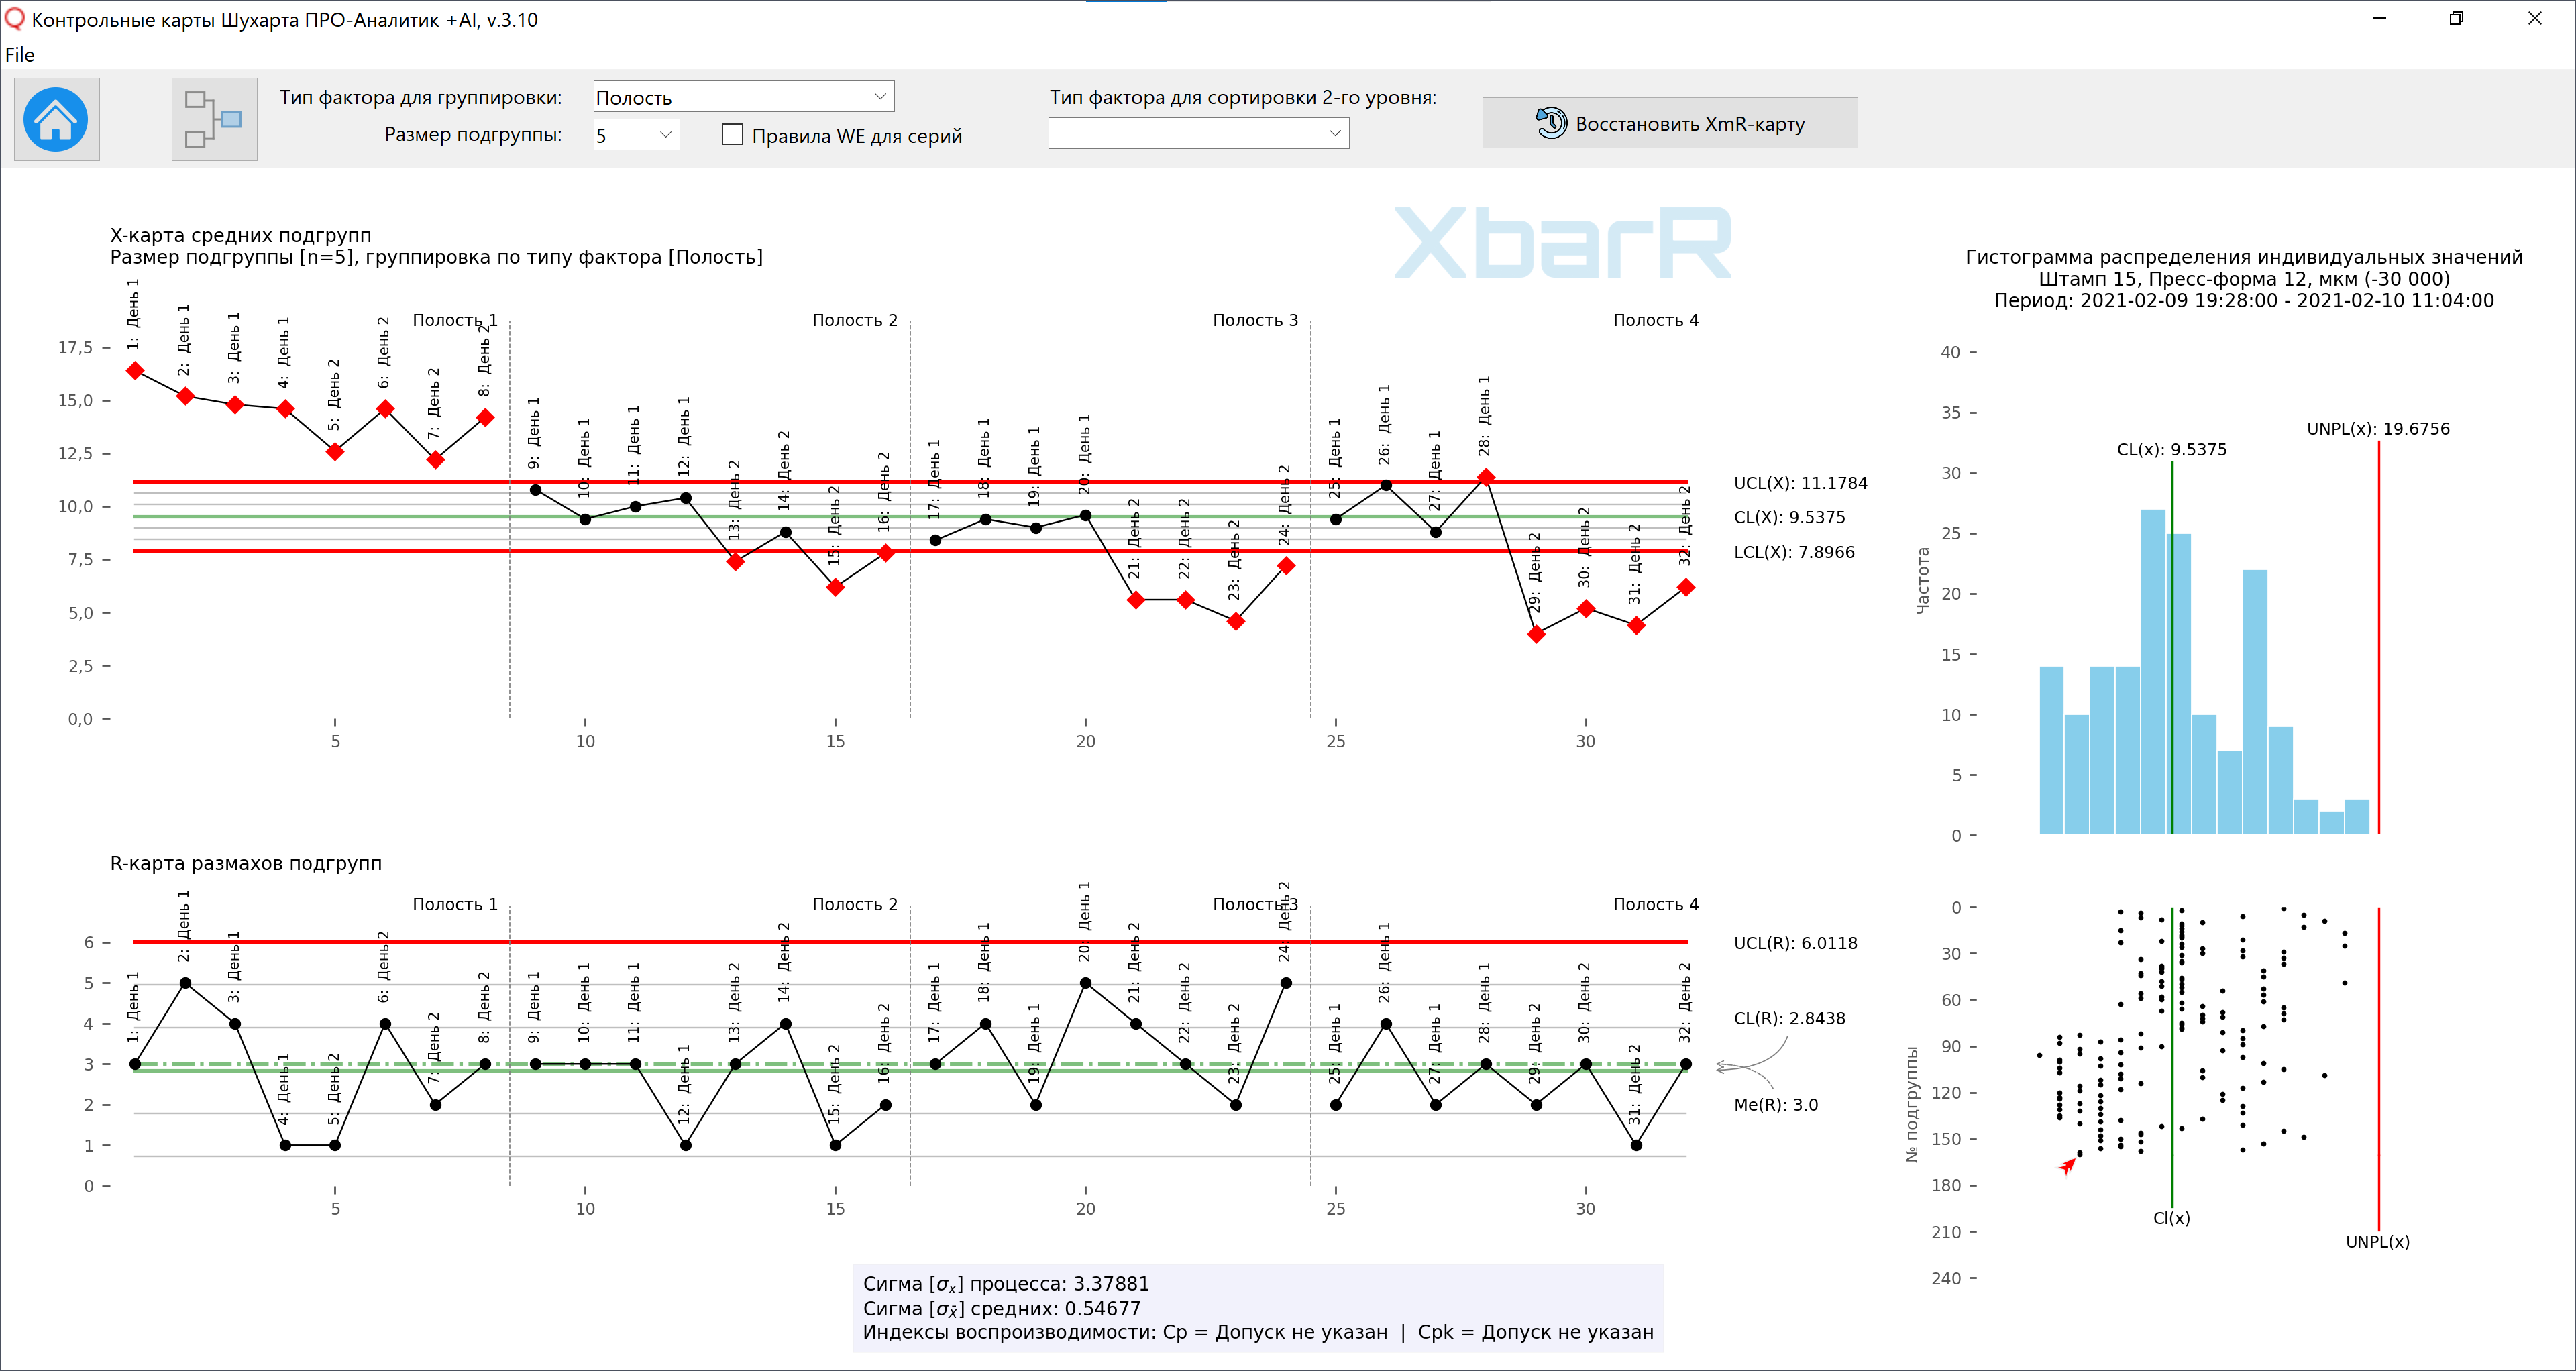 Скриншот программы с панелью управления графиками контрольной XbarR-карты средних.